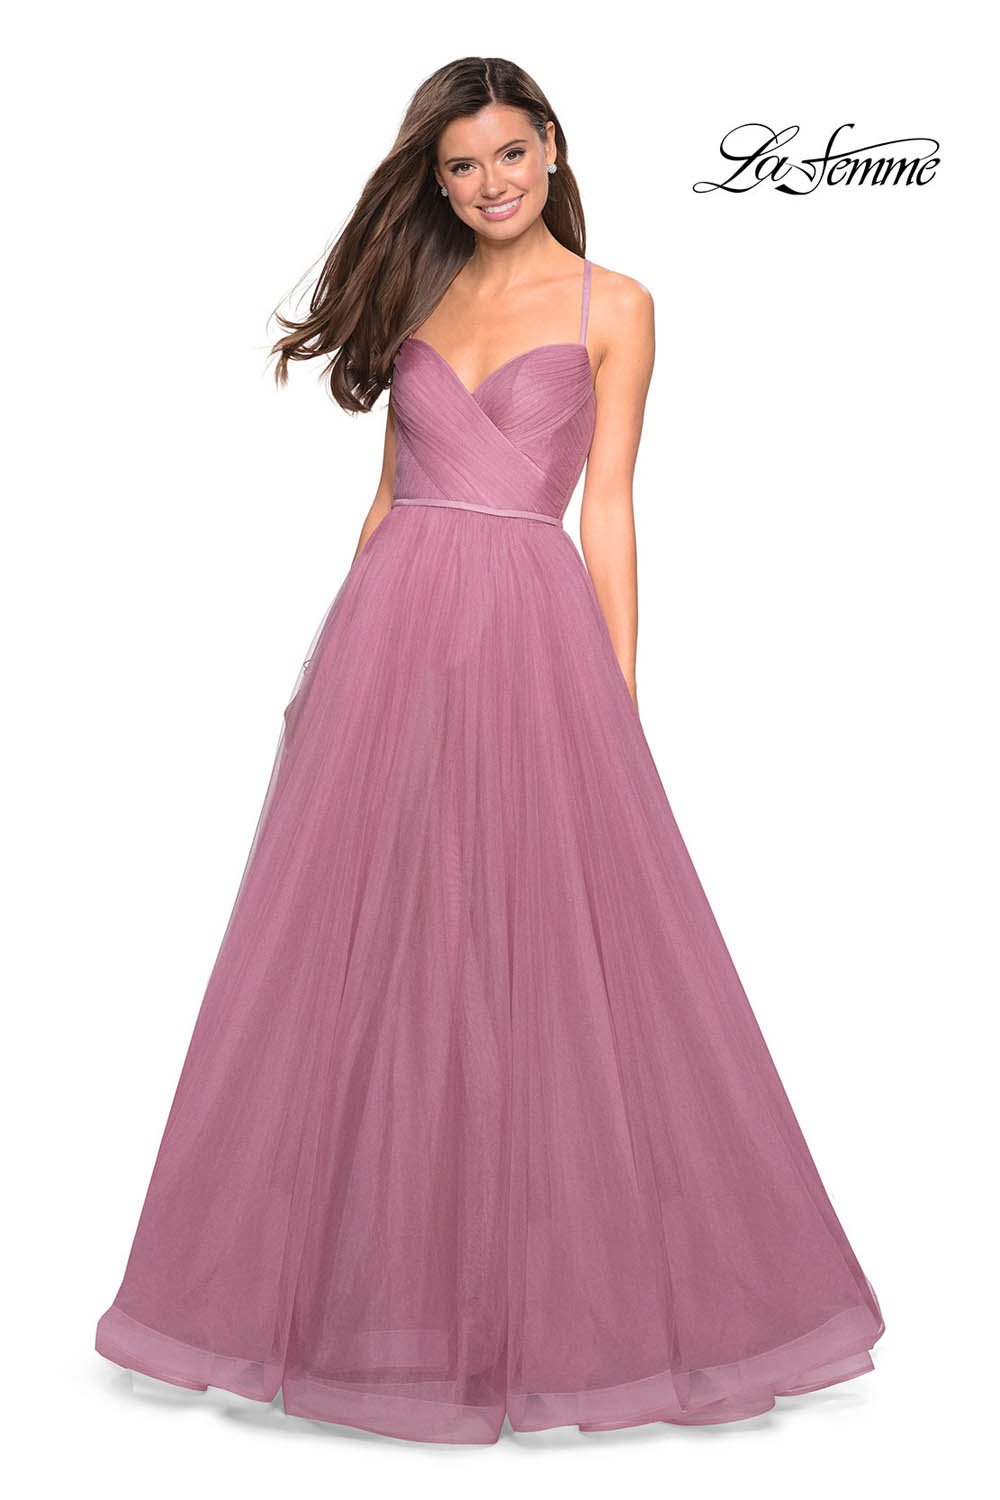 La Femme 27535 dress images in these colors: Lavender, Mauve, Navy, Platinum.